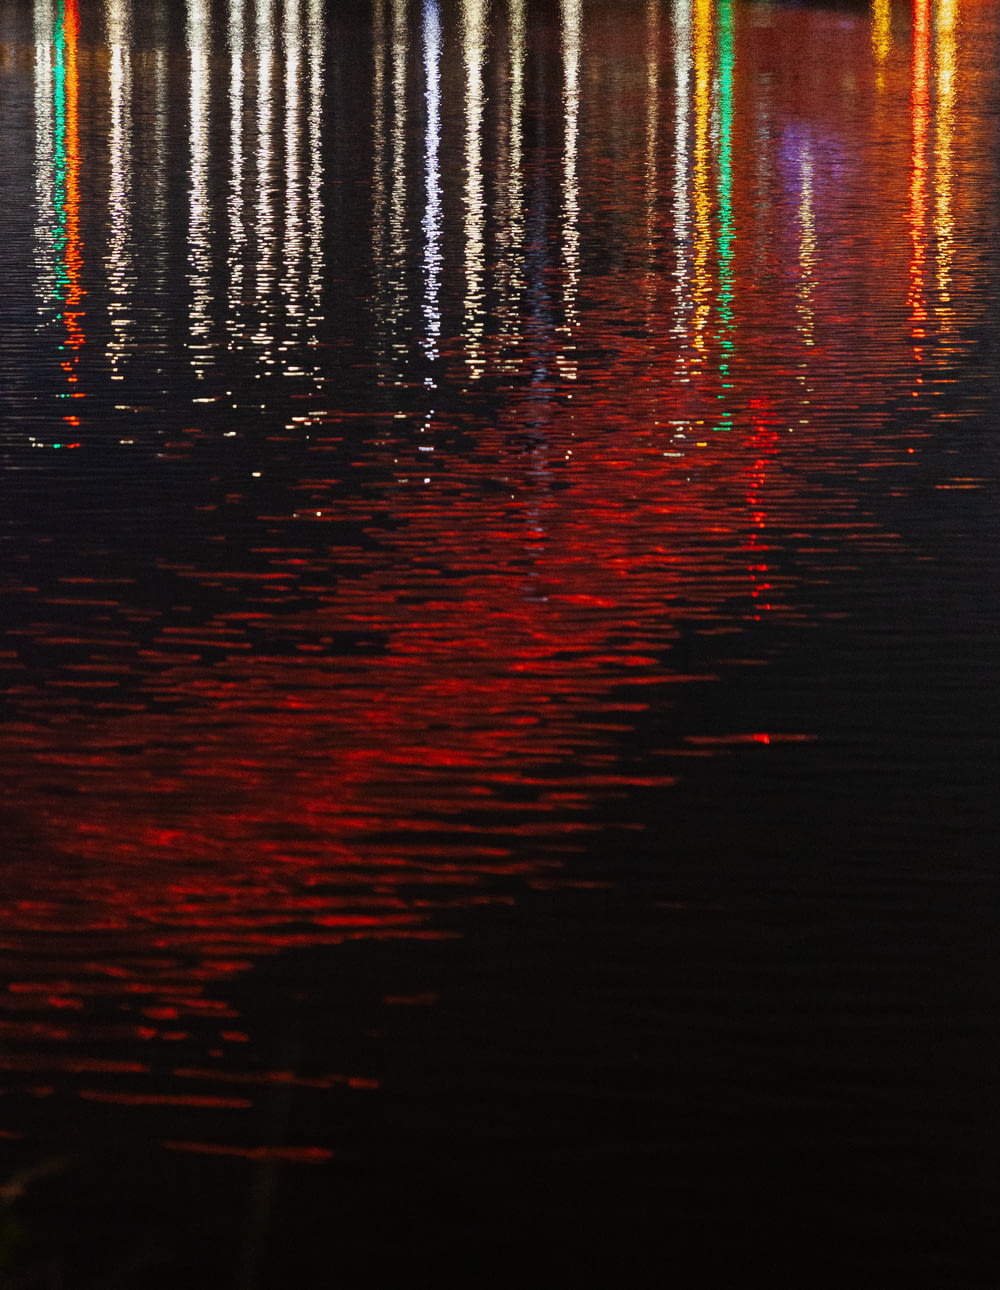 Un cuerpo de agua lleno de muchas luces de colores